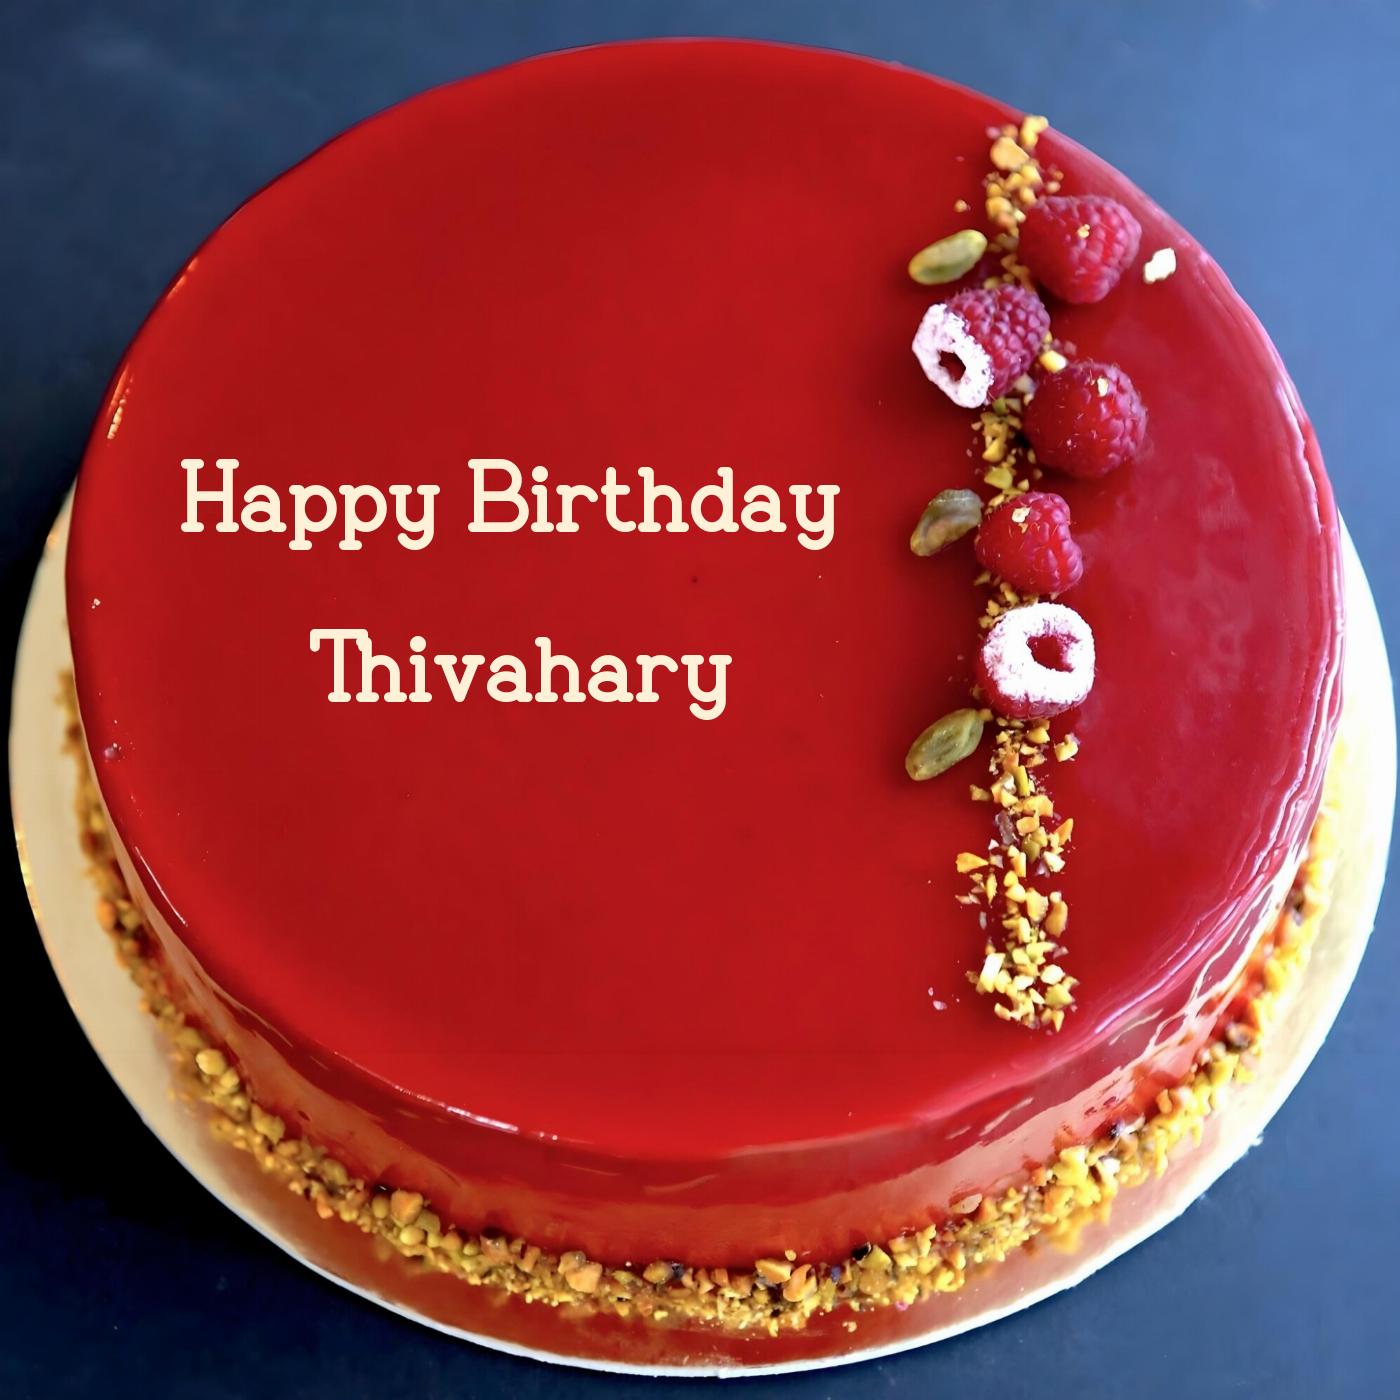 Happy Birthday Thivahary Red Raspberry Cake